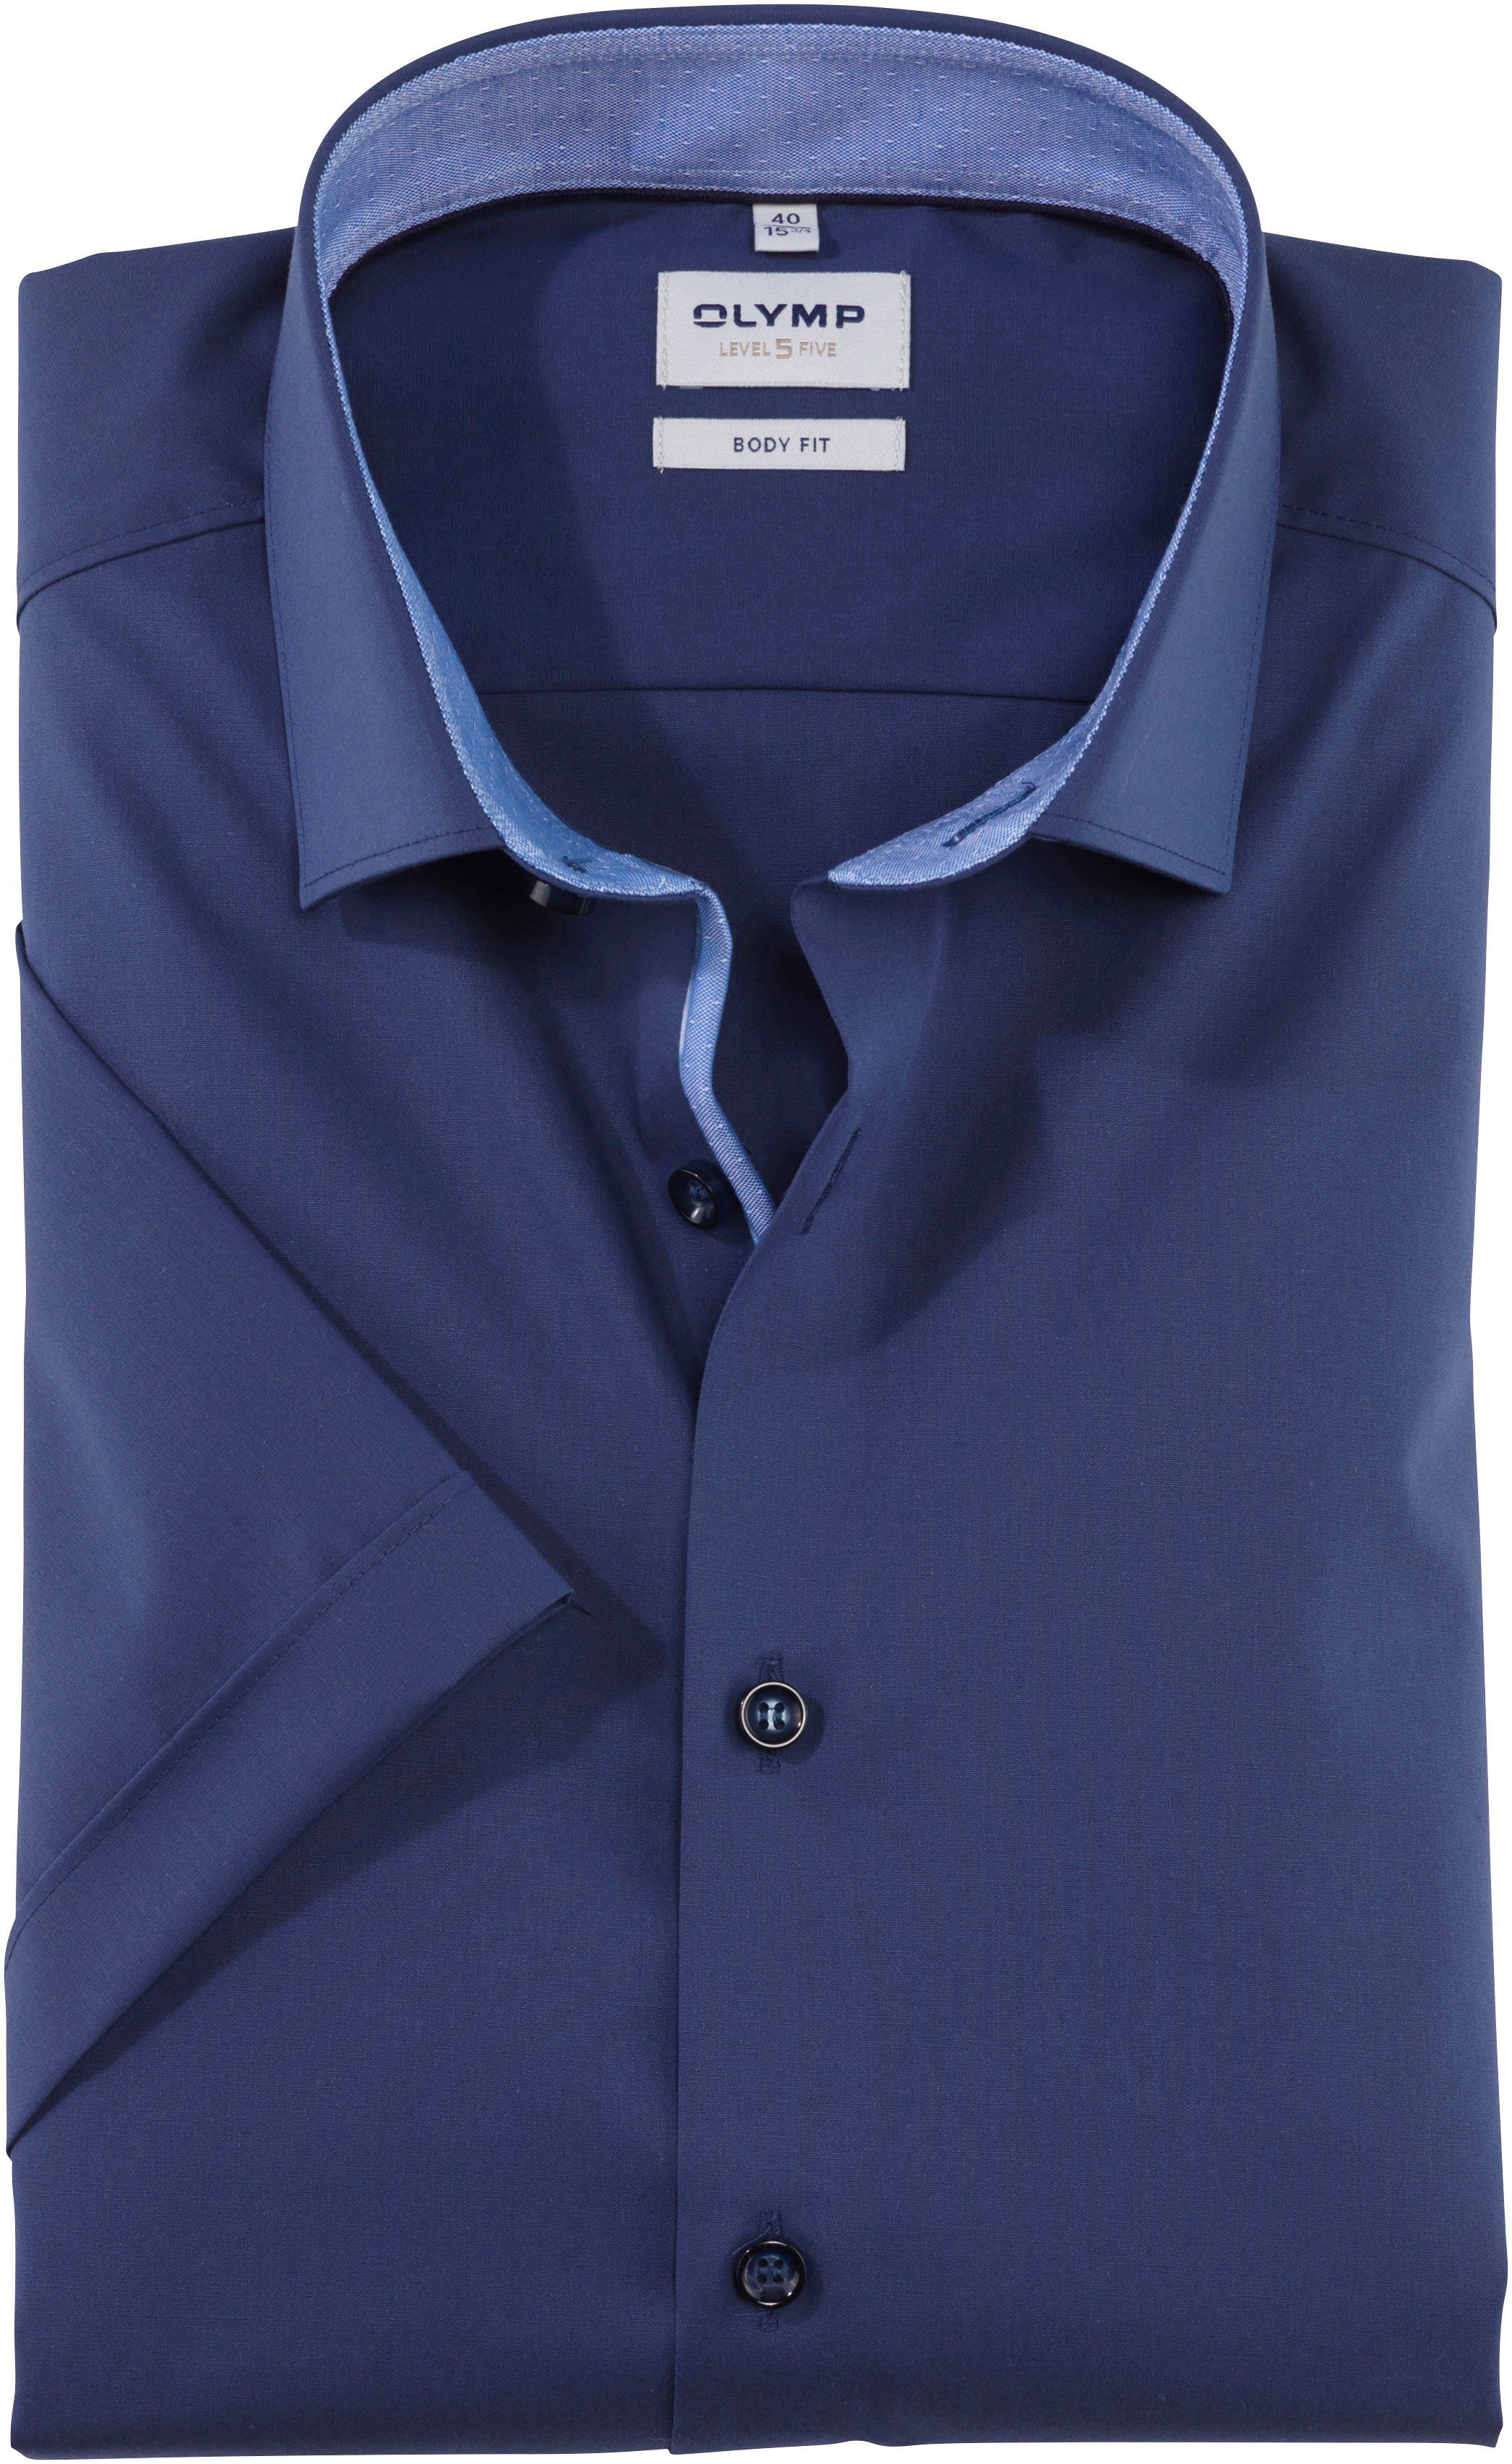 【Juwel】 Olymp Kurzarm | Hemden Herren kaufen für online OTTO